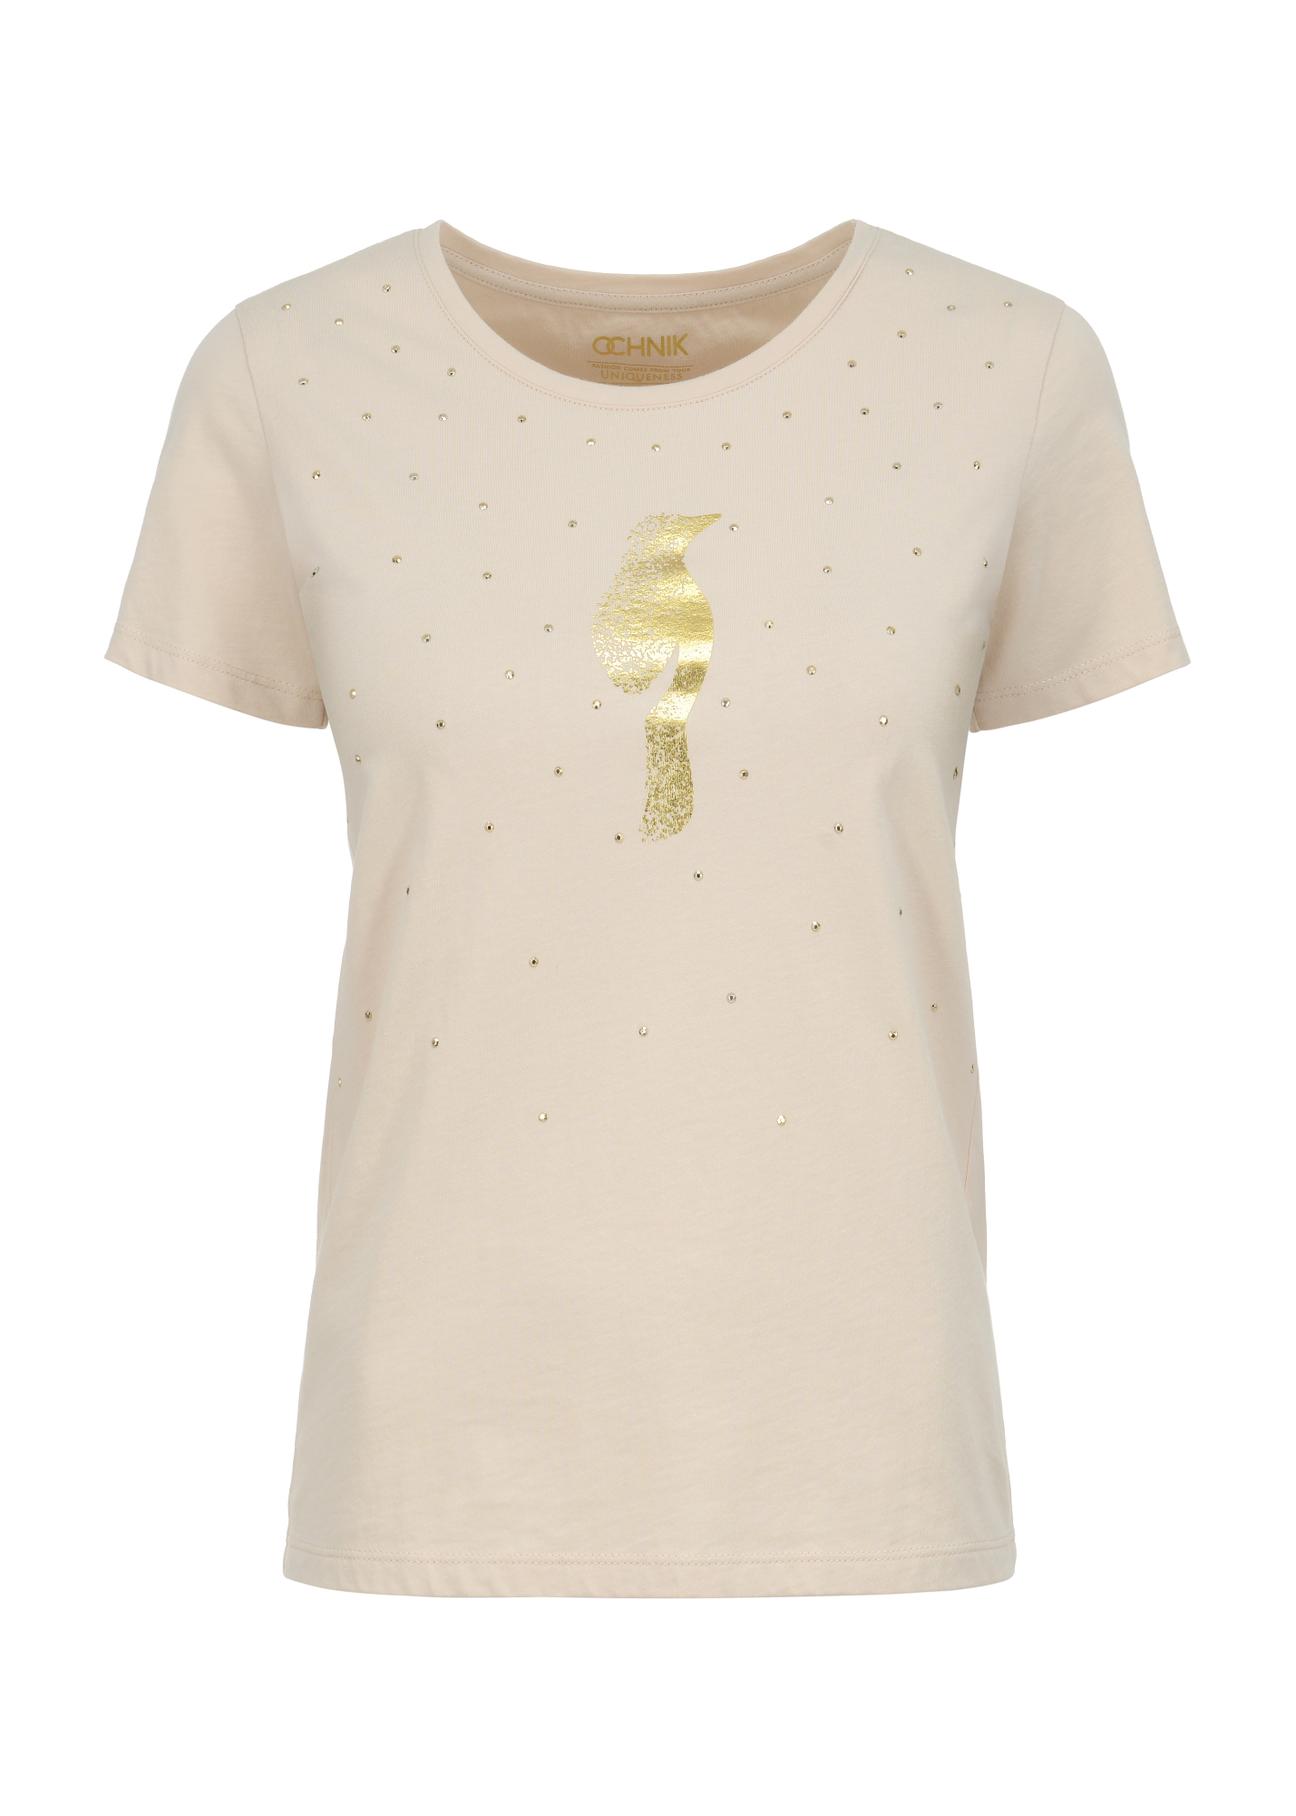 Beżowy T-shirt damski ze złotym logo TSHDT-0110-81(W23)